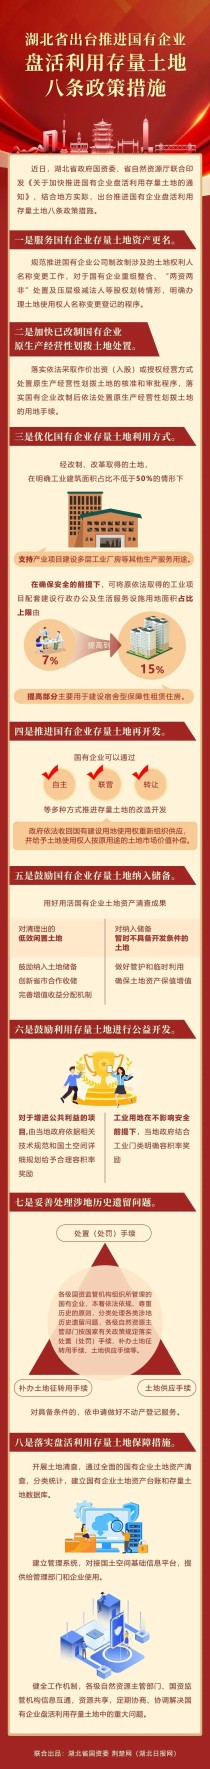 湖北省出台推进国有企业盘活利用存量土地八条政策措施